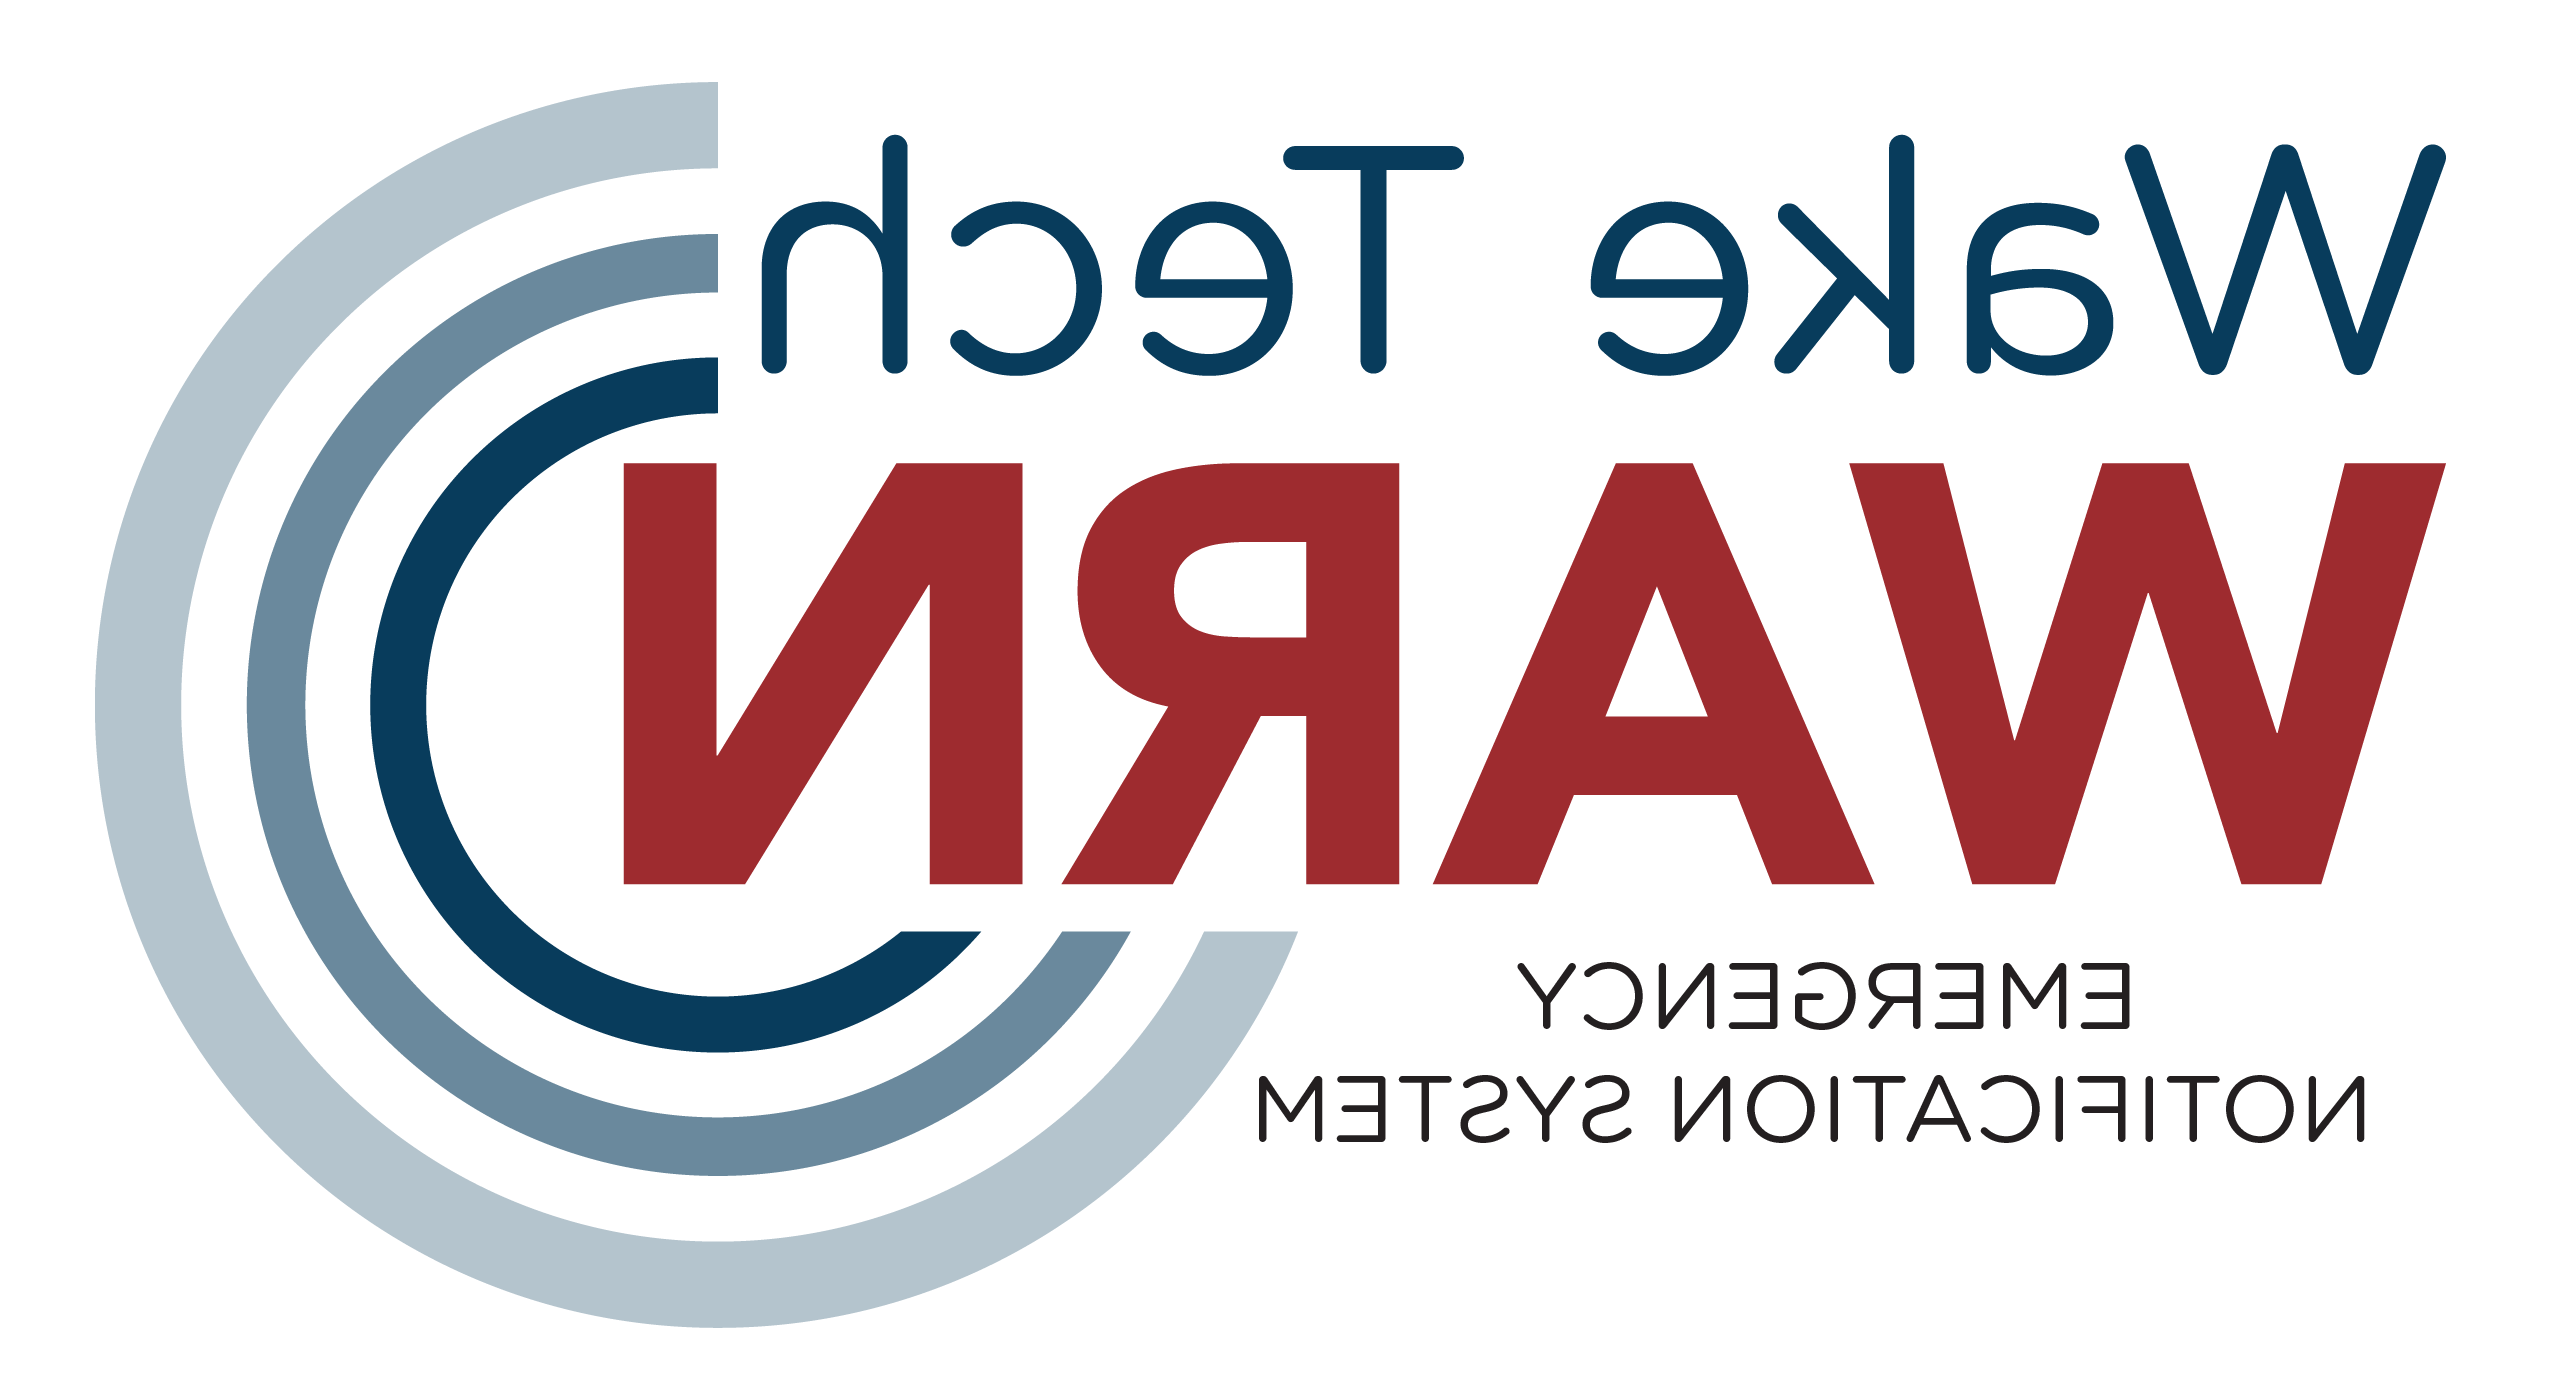 Wake Tech WARN logo